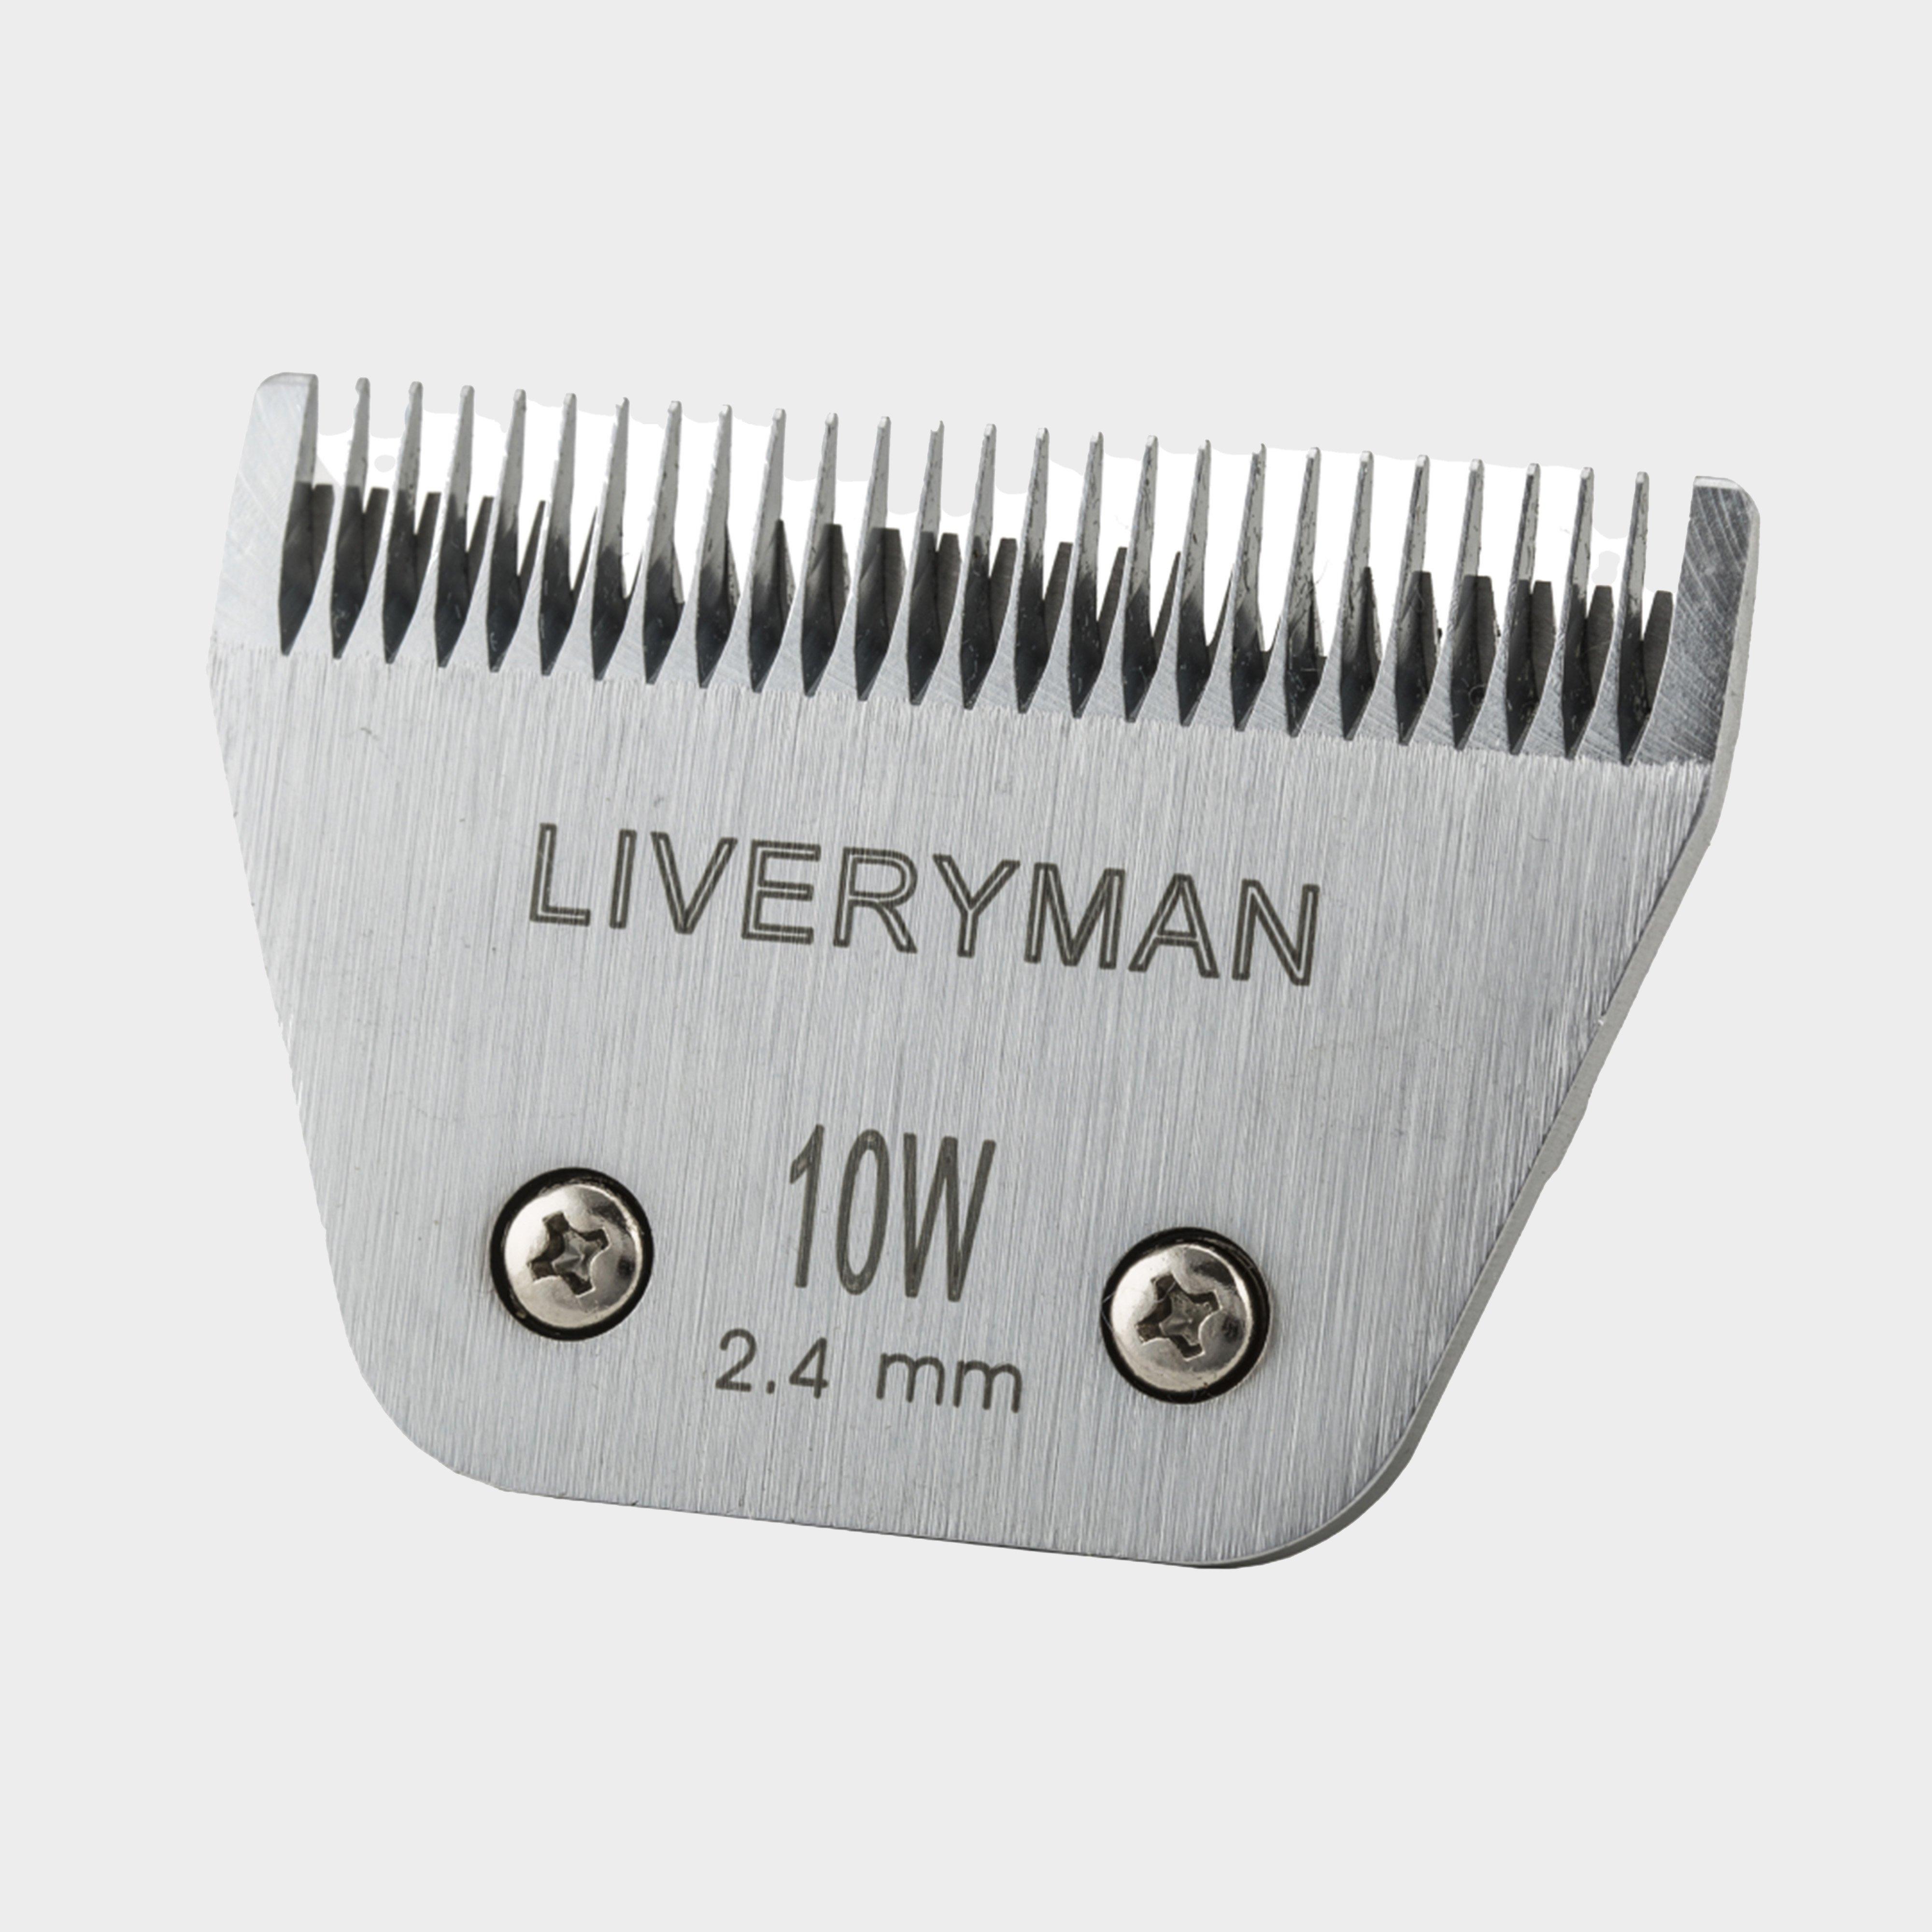  Liveryman A5 Wide Medium 10W 2.4mm Blade, Silver